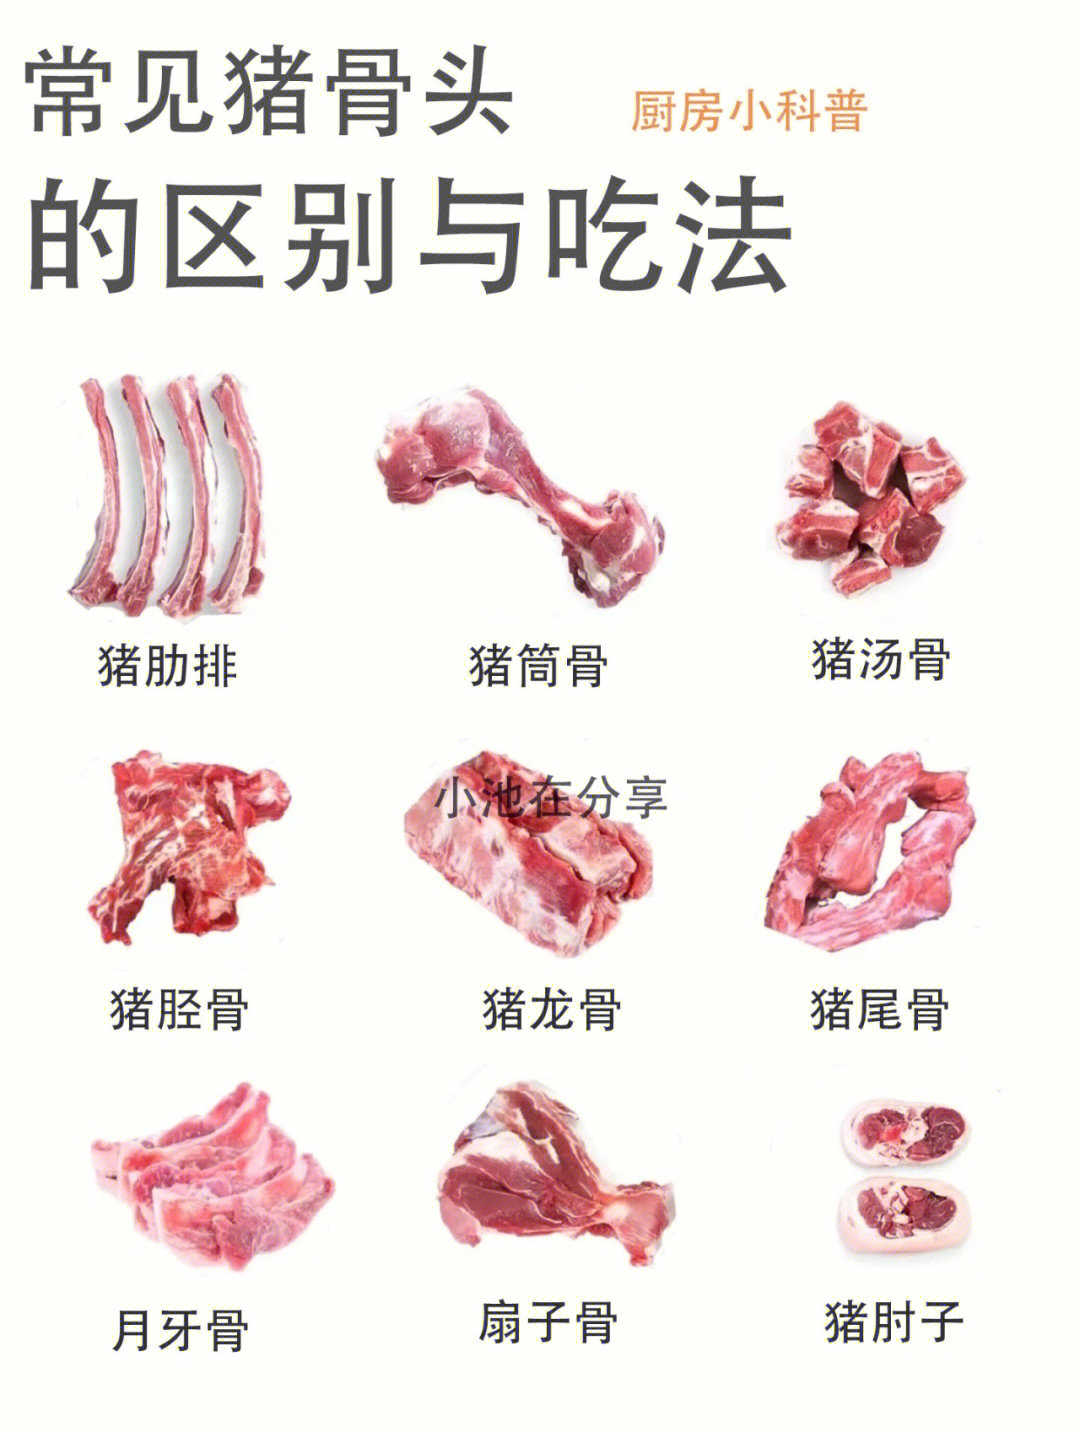 猪骨头分类图片